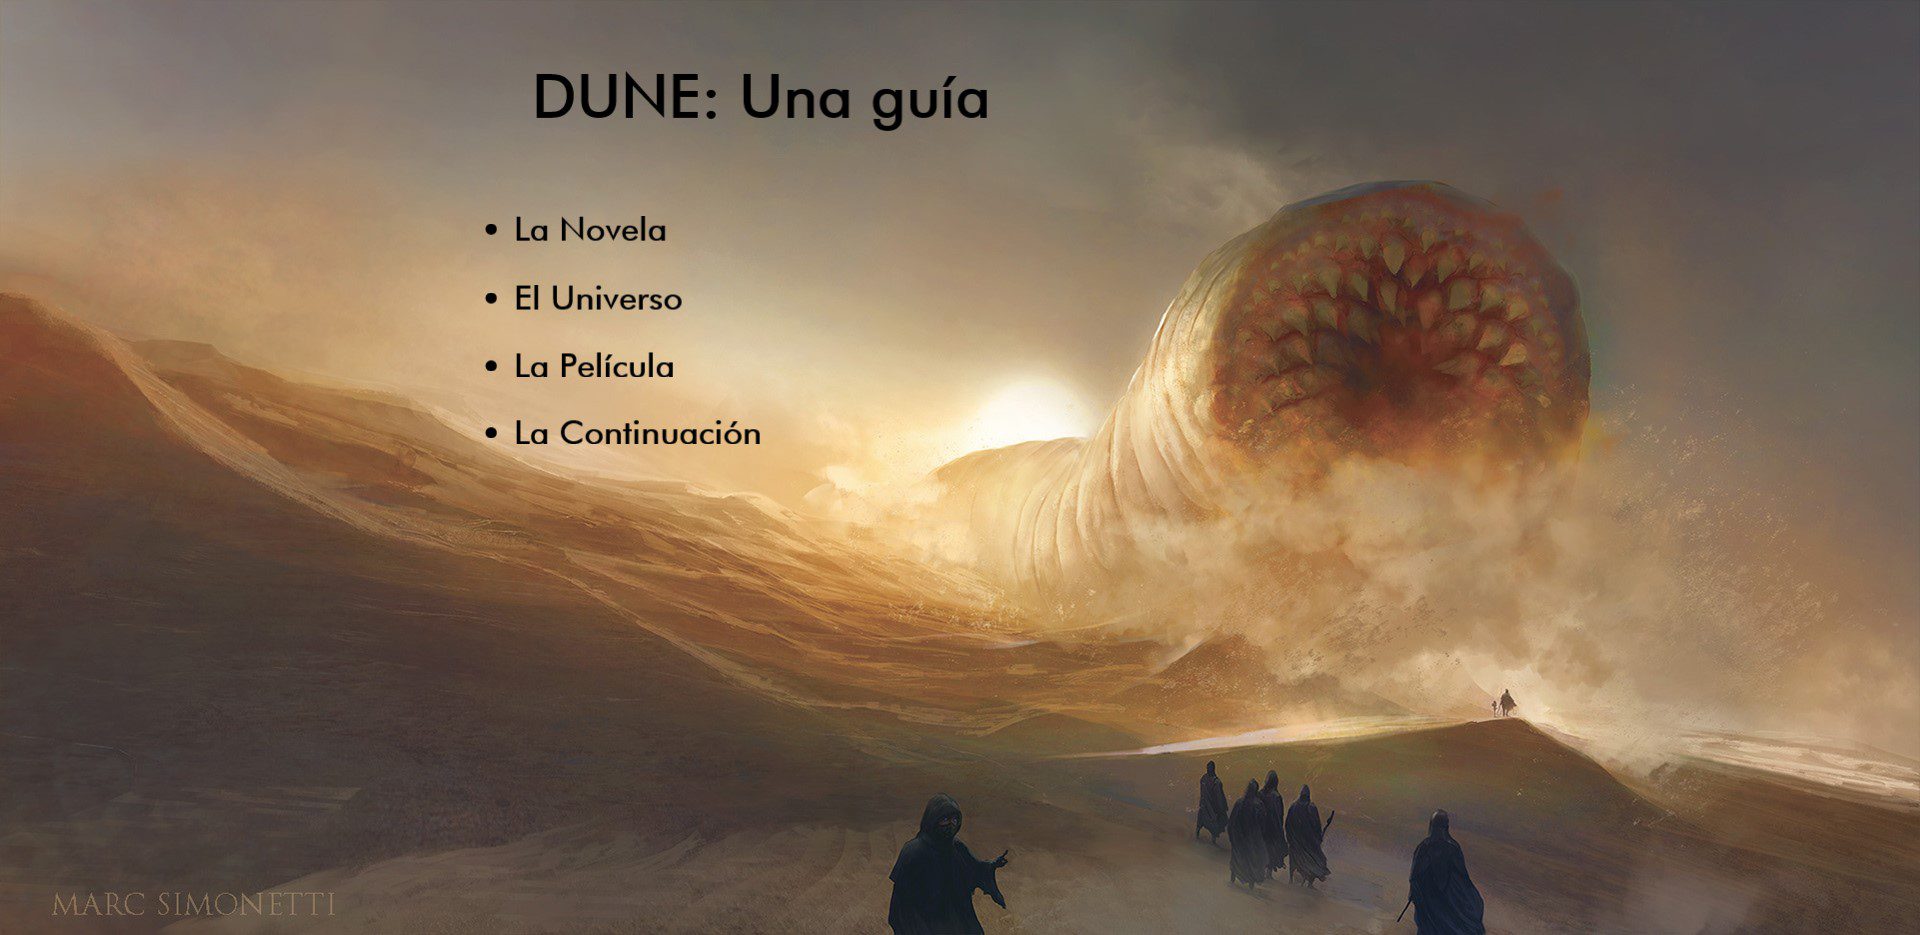 Dune: Una guía